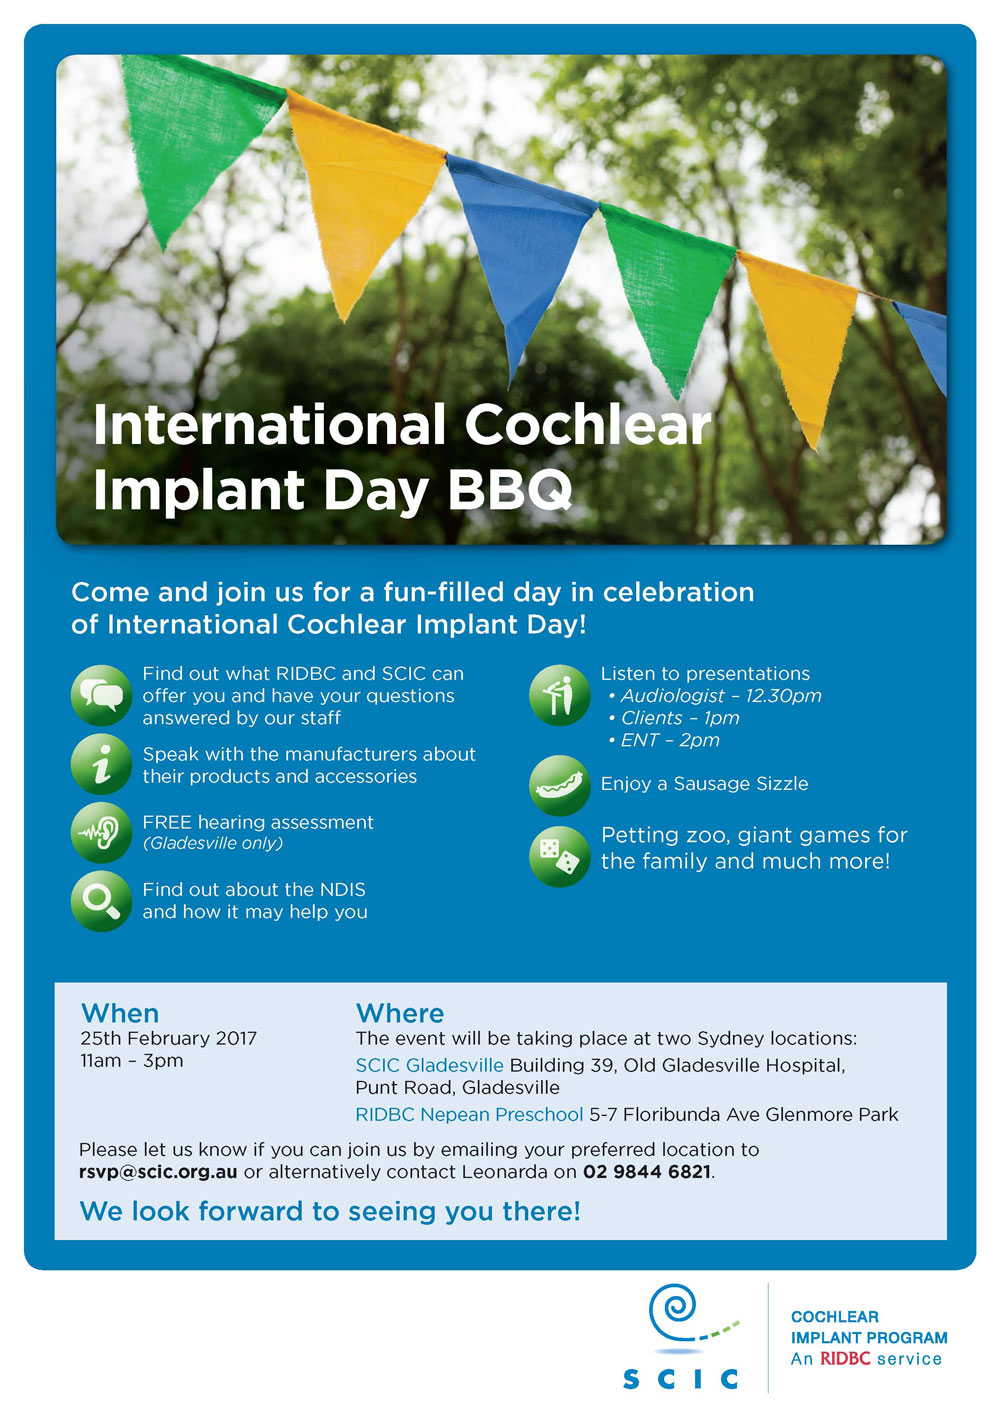 International Cochlear Implant Day BBQ